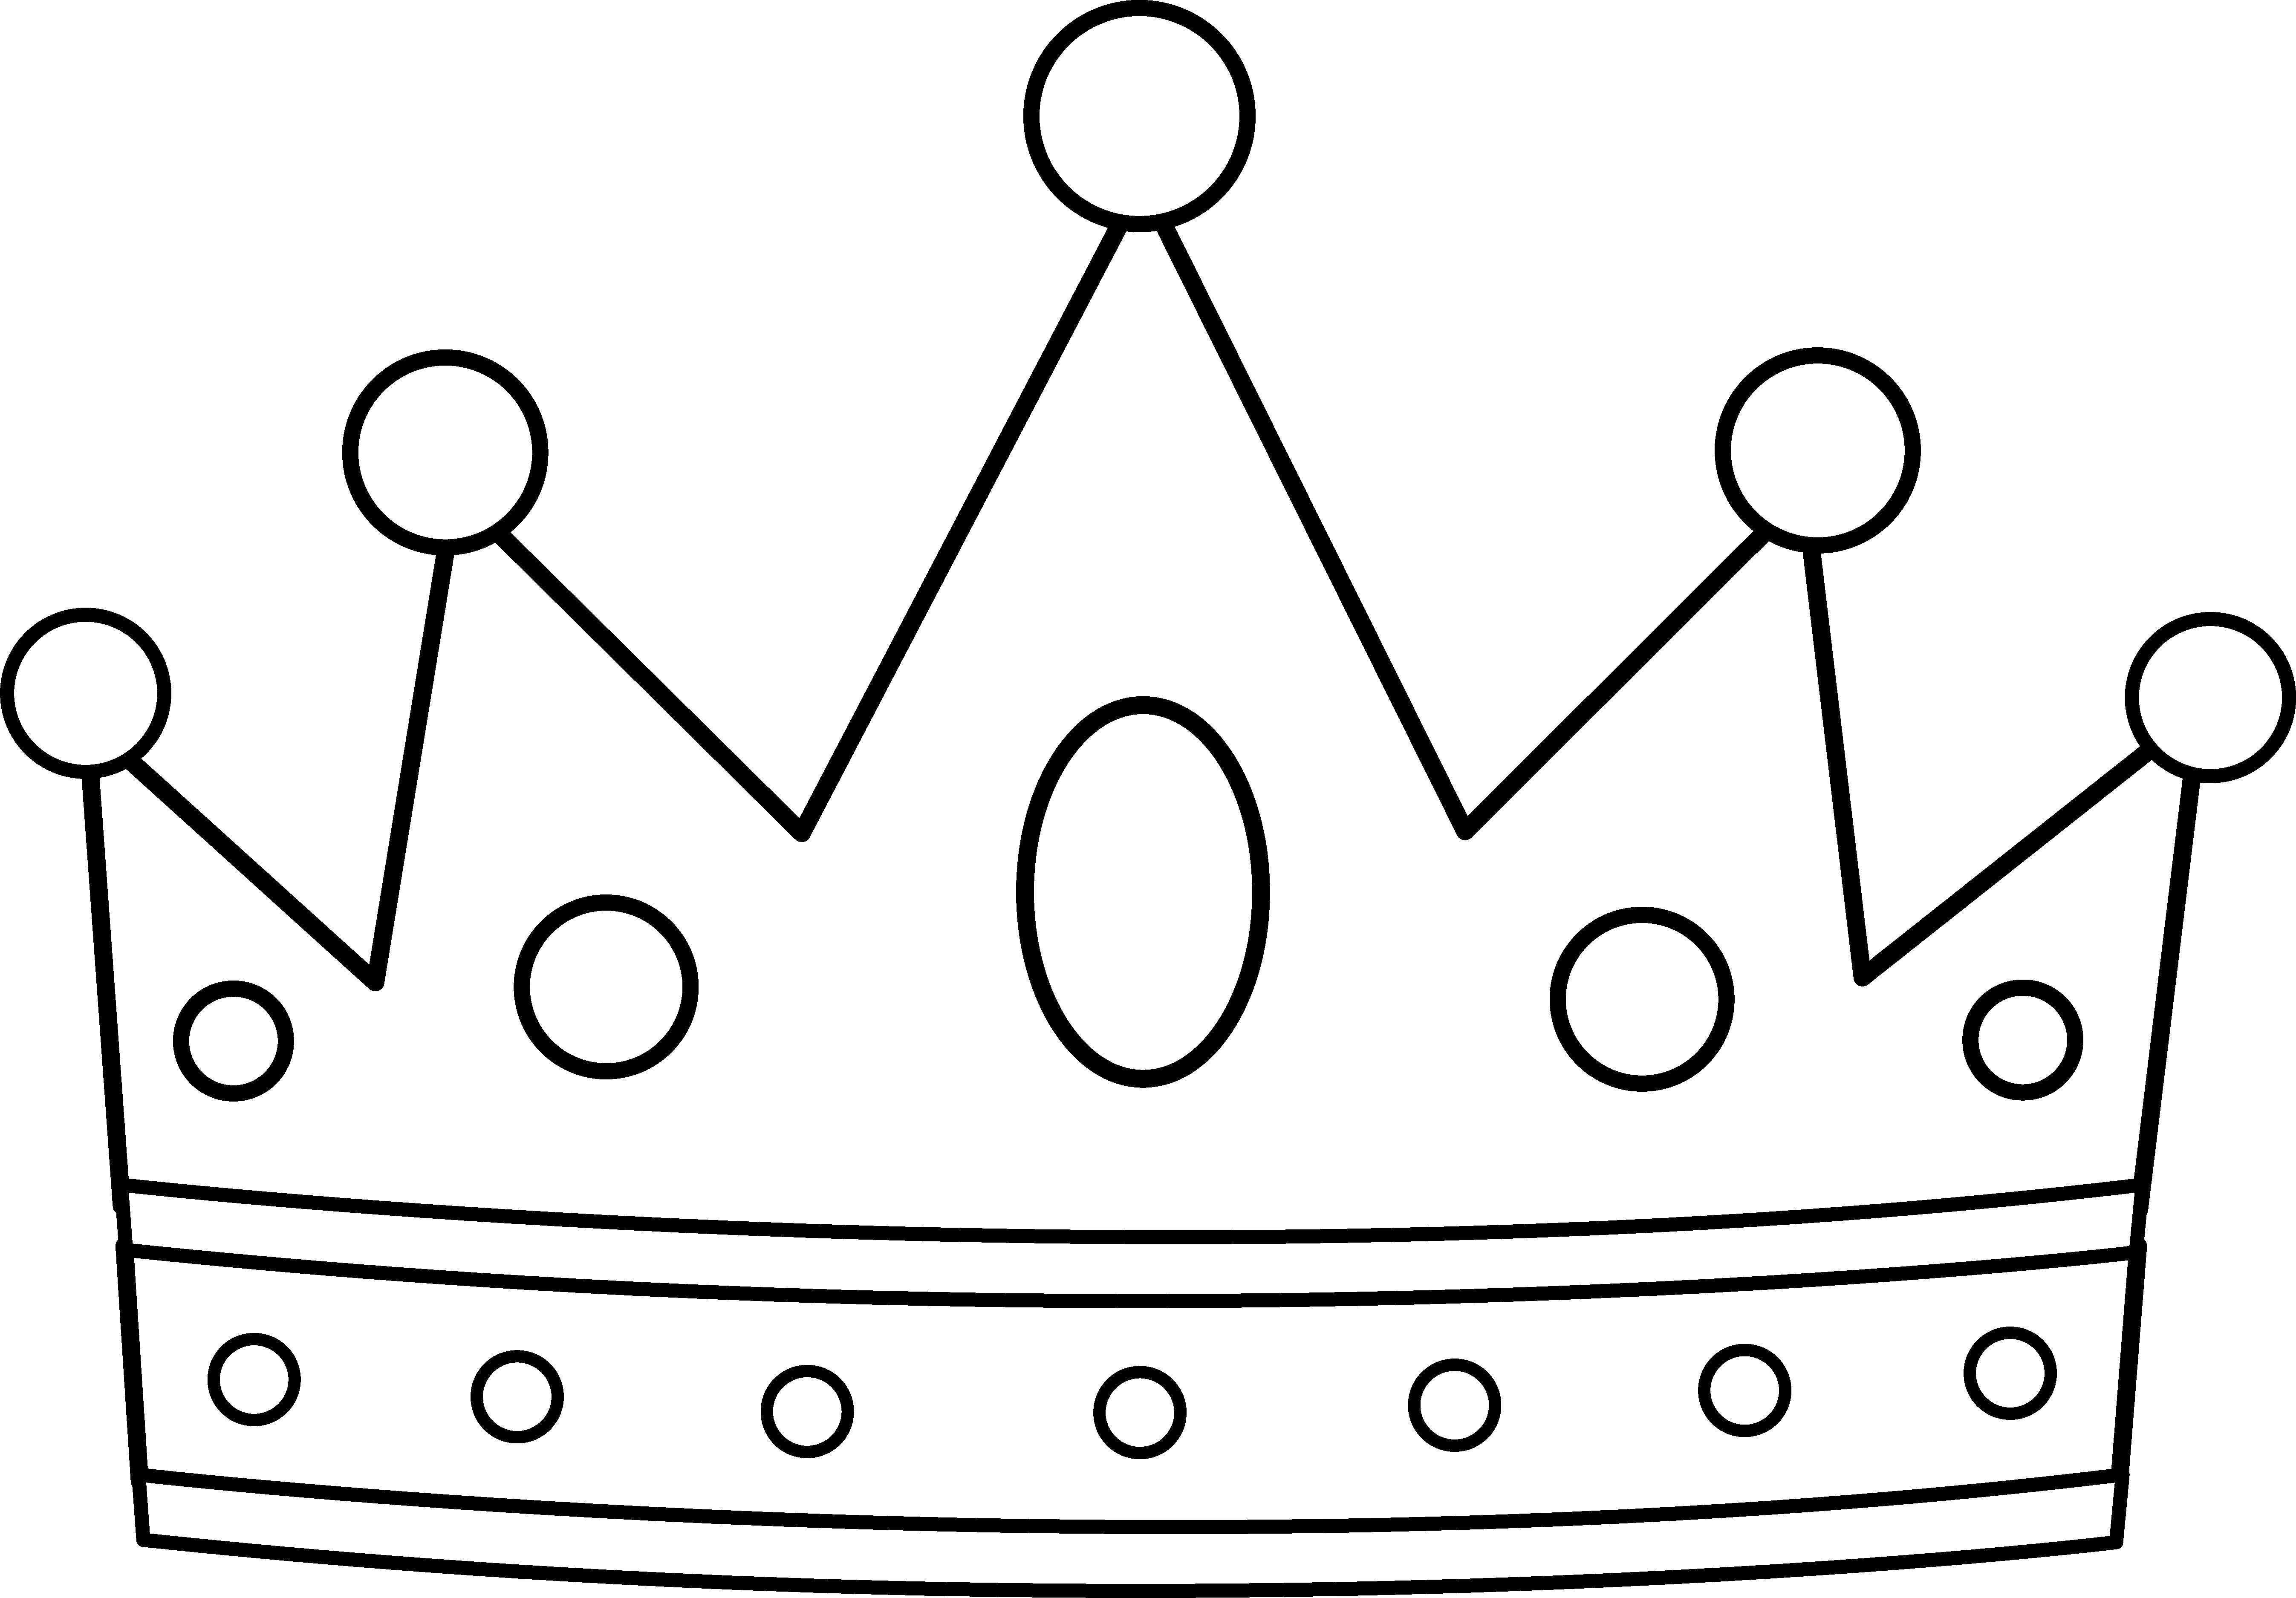 Название: Раскраска Корона в камнях. Категория: Корона. Теги: Корона.